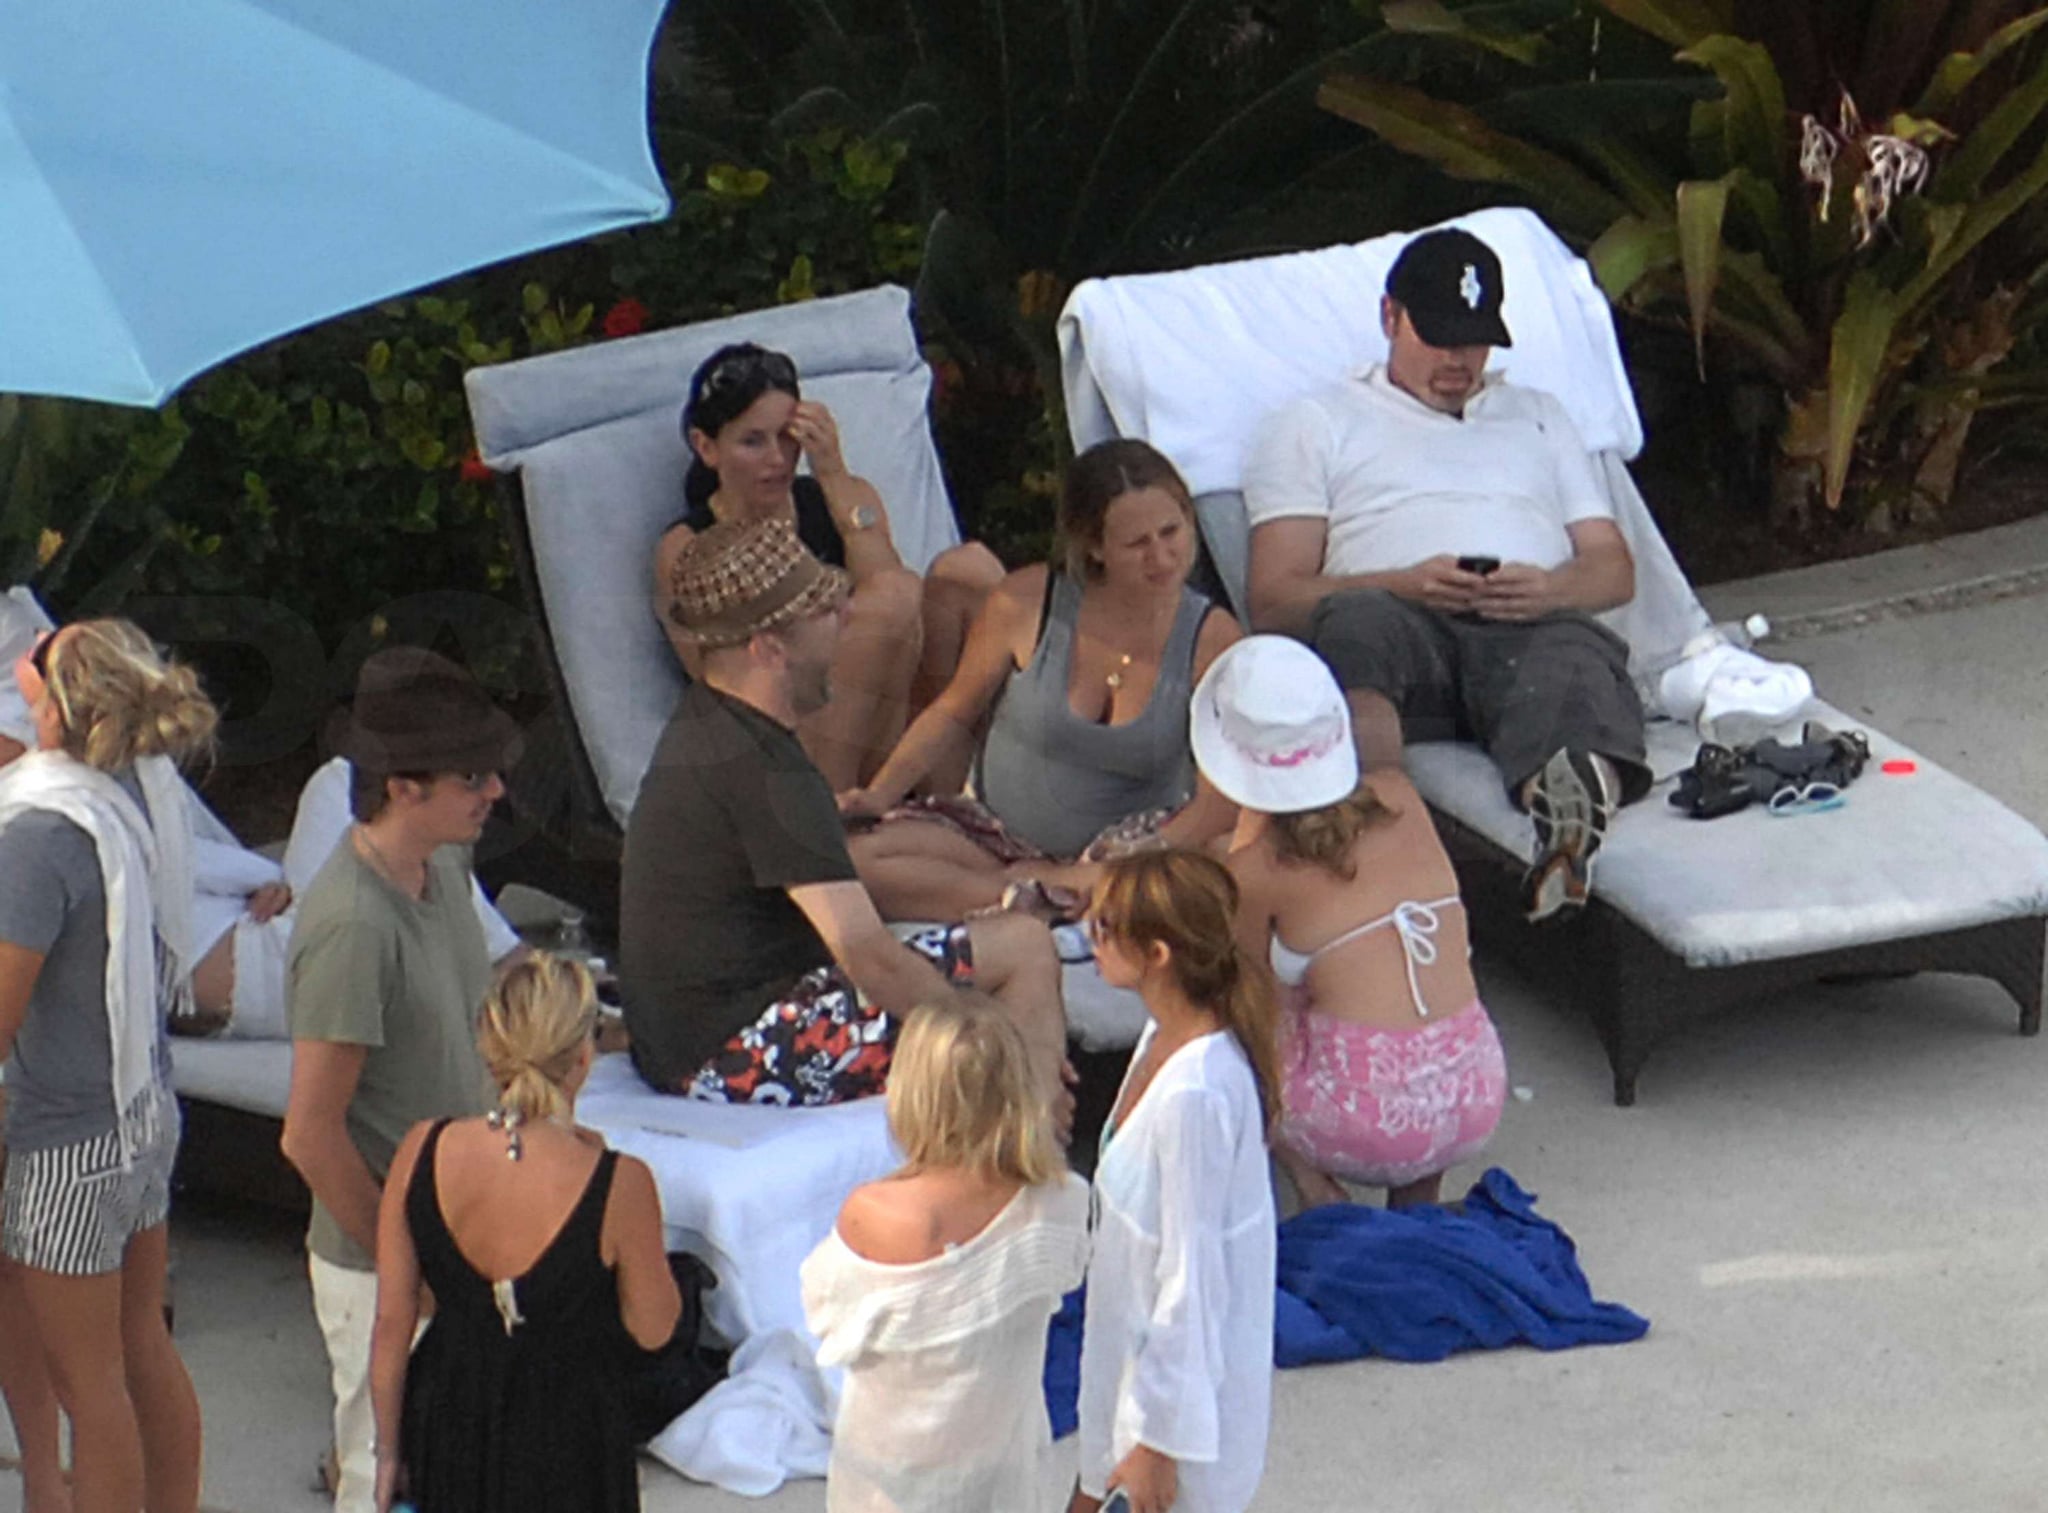 Bikini Photos of Jennifer Aniston, Cox-Arquettes, Leonardo DiCaprio, Bar Refaeli in ...2048 x 1513